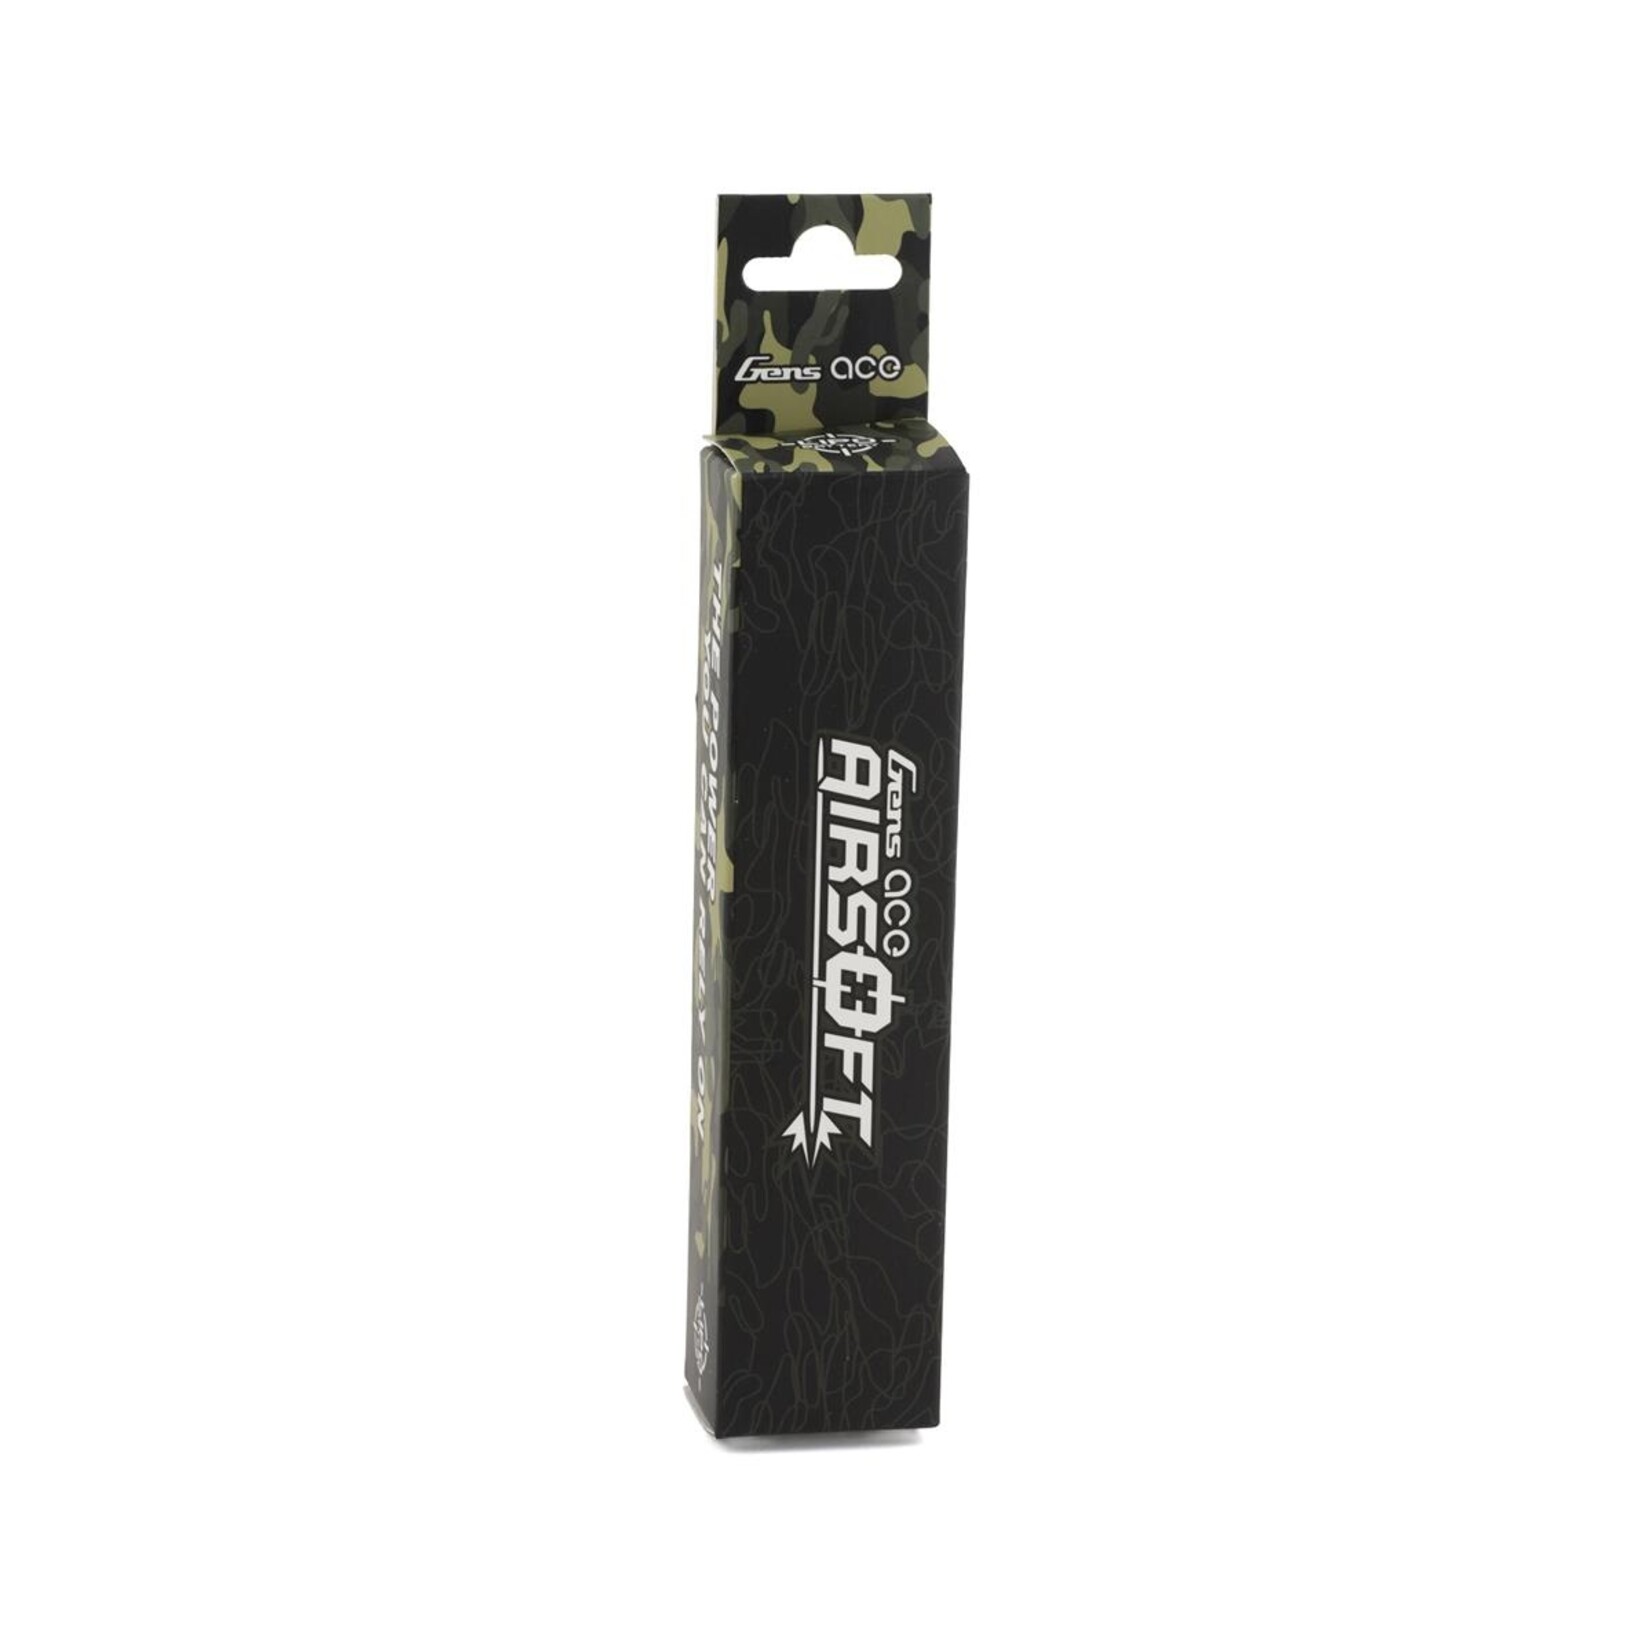 Gens Ace Gens Ace 2S 25C Airsoft LiPo Battery w/Deans Plug (7.4V/1200mAh) #GEA12002S25D